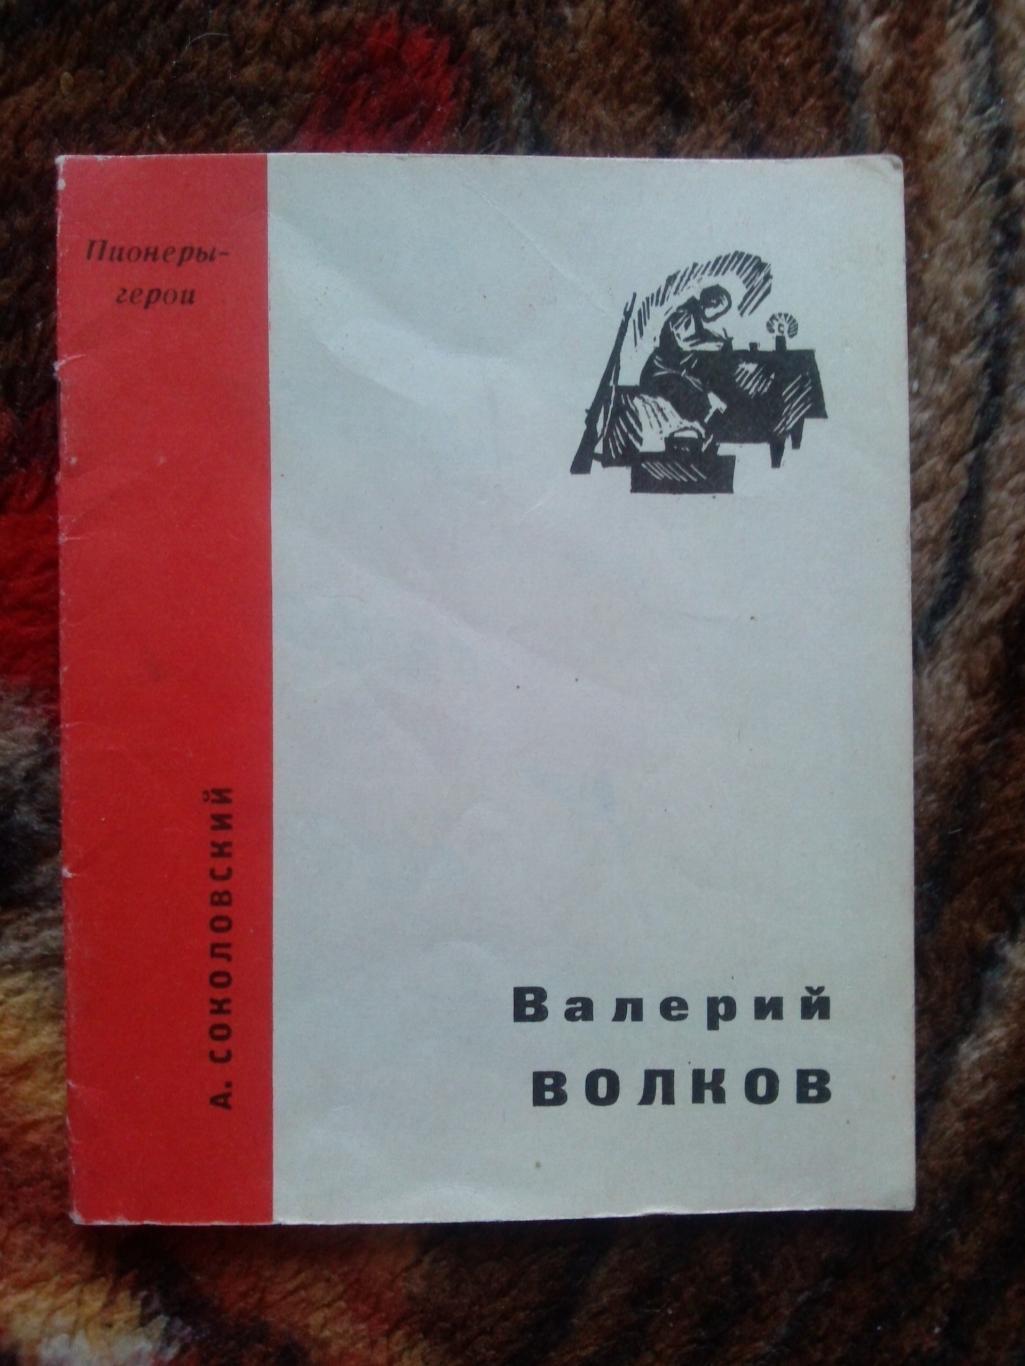 Пионеры-герои (Плакат + брошюра) 1967 г. Валерий Волков (Пионер , агитация) 3